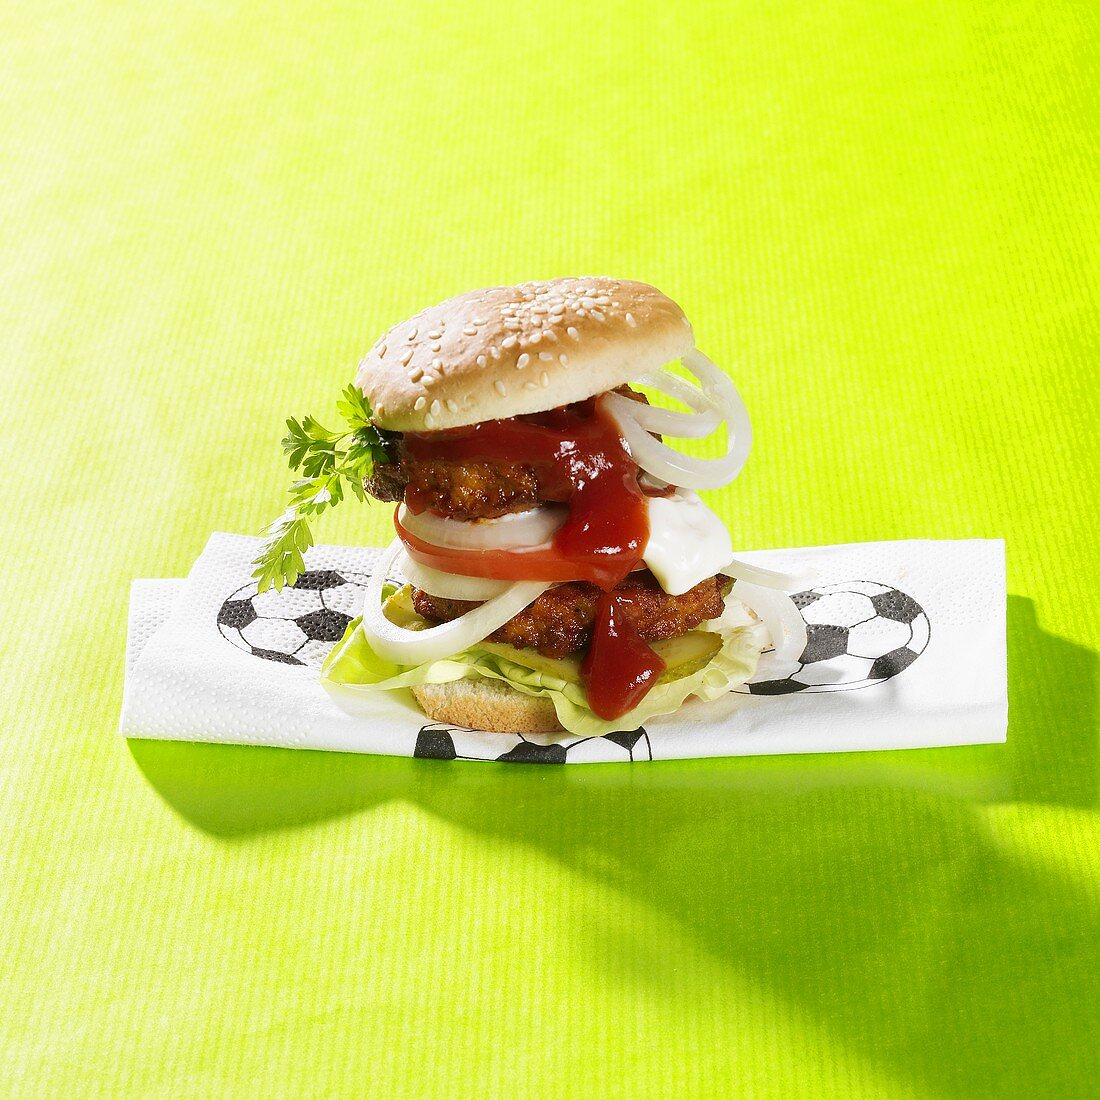 Burger auf Serviette mit Fussballmotiv